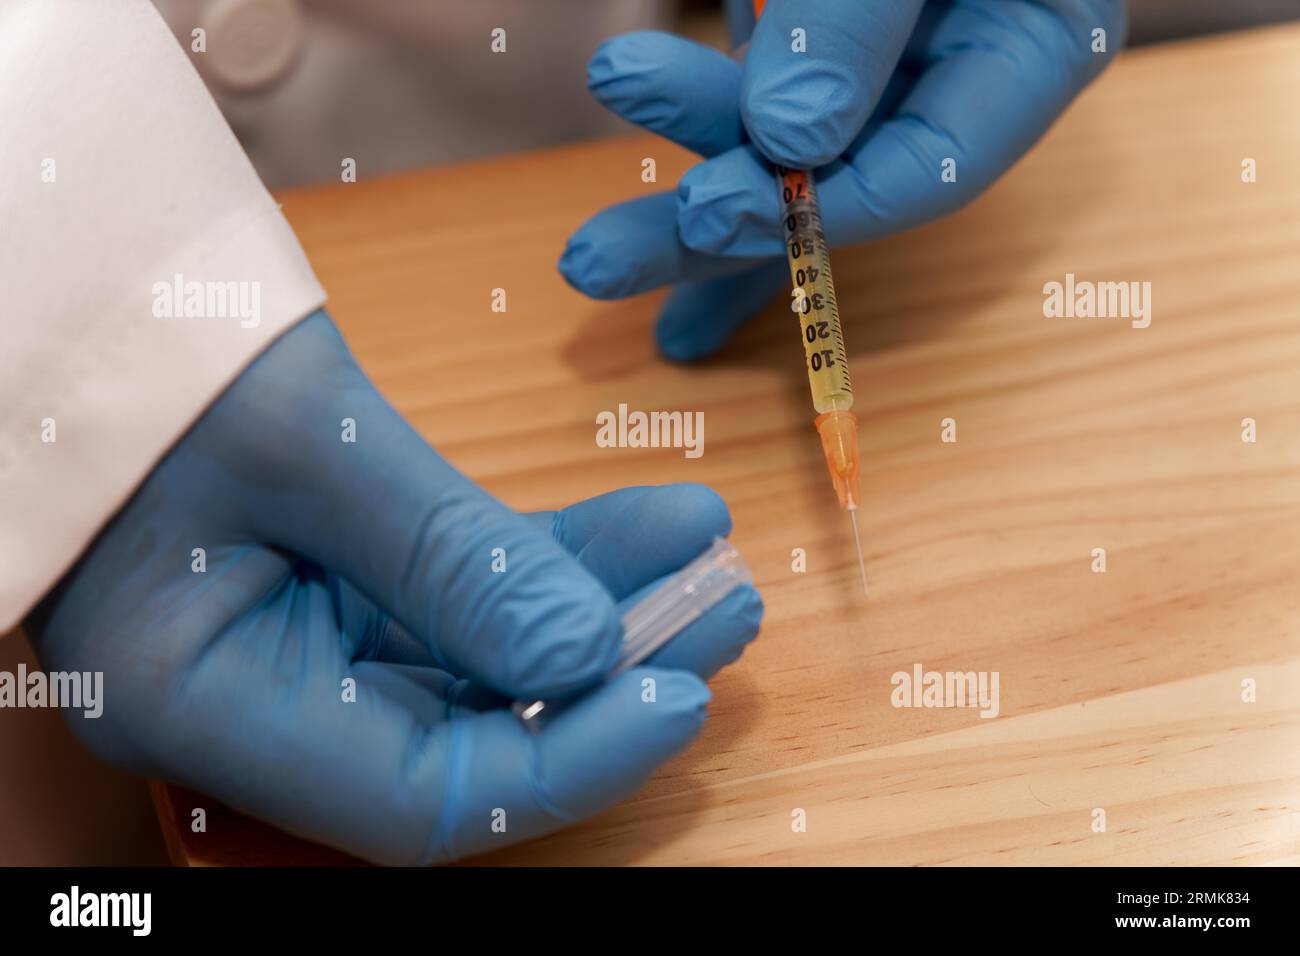 Les mains du docteur dans des gants bleus en latex avec une seringue à la main sur la table de son bureau Banque D'Images